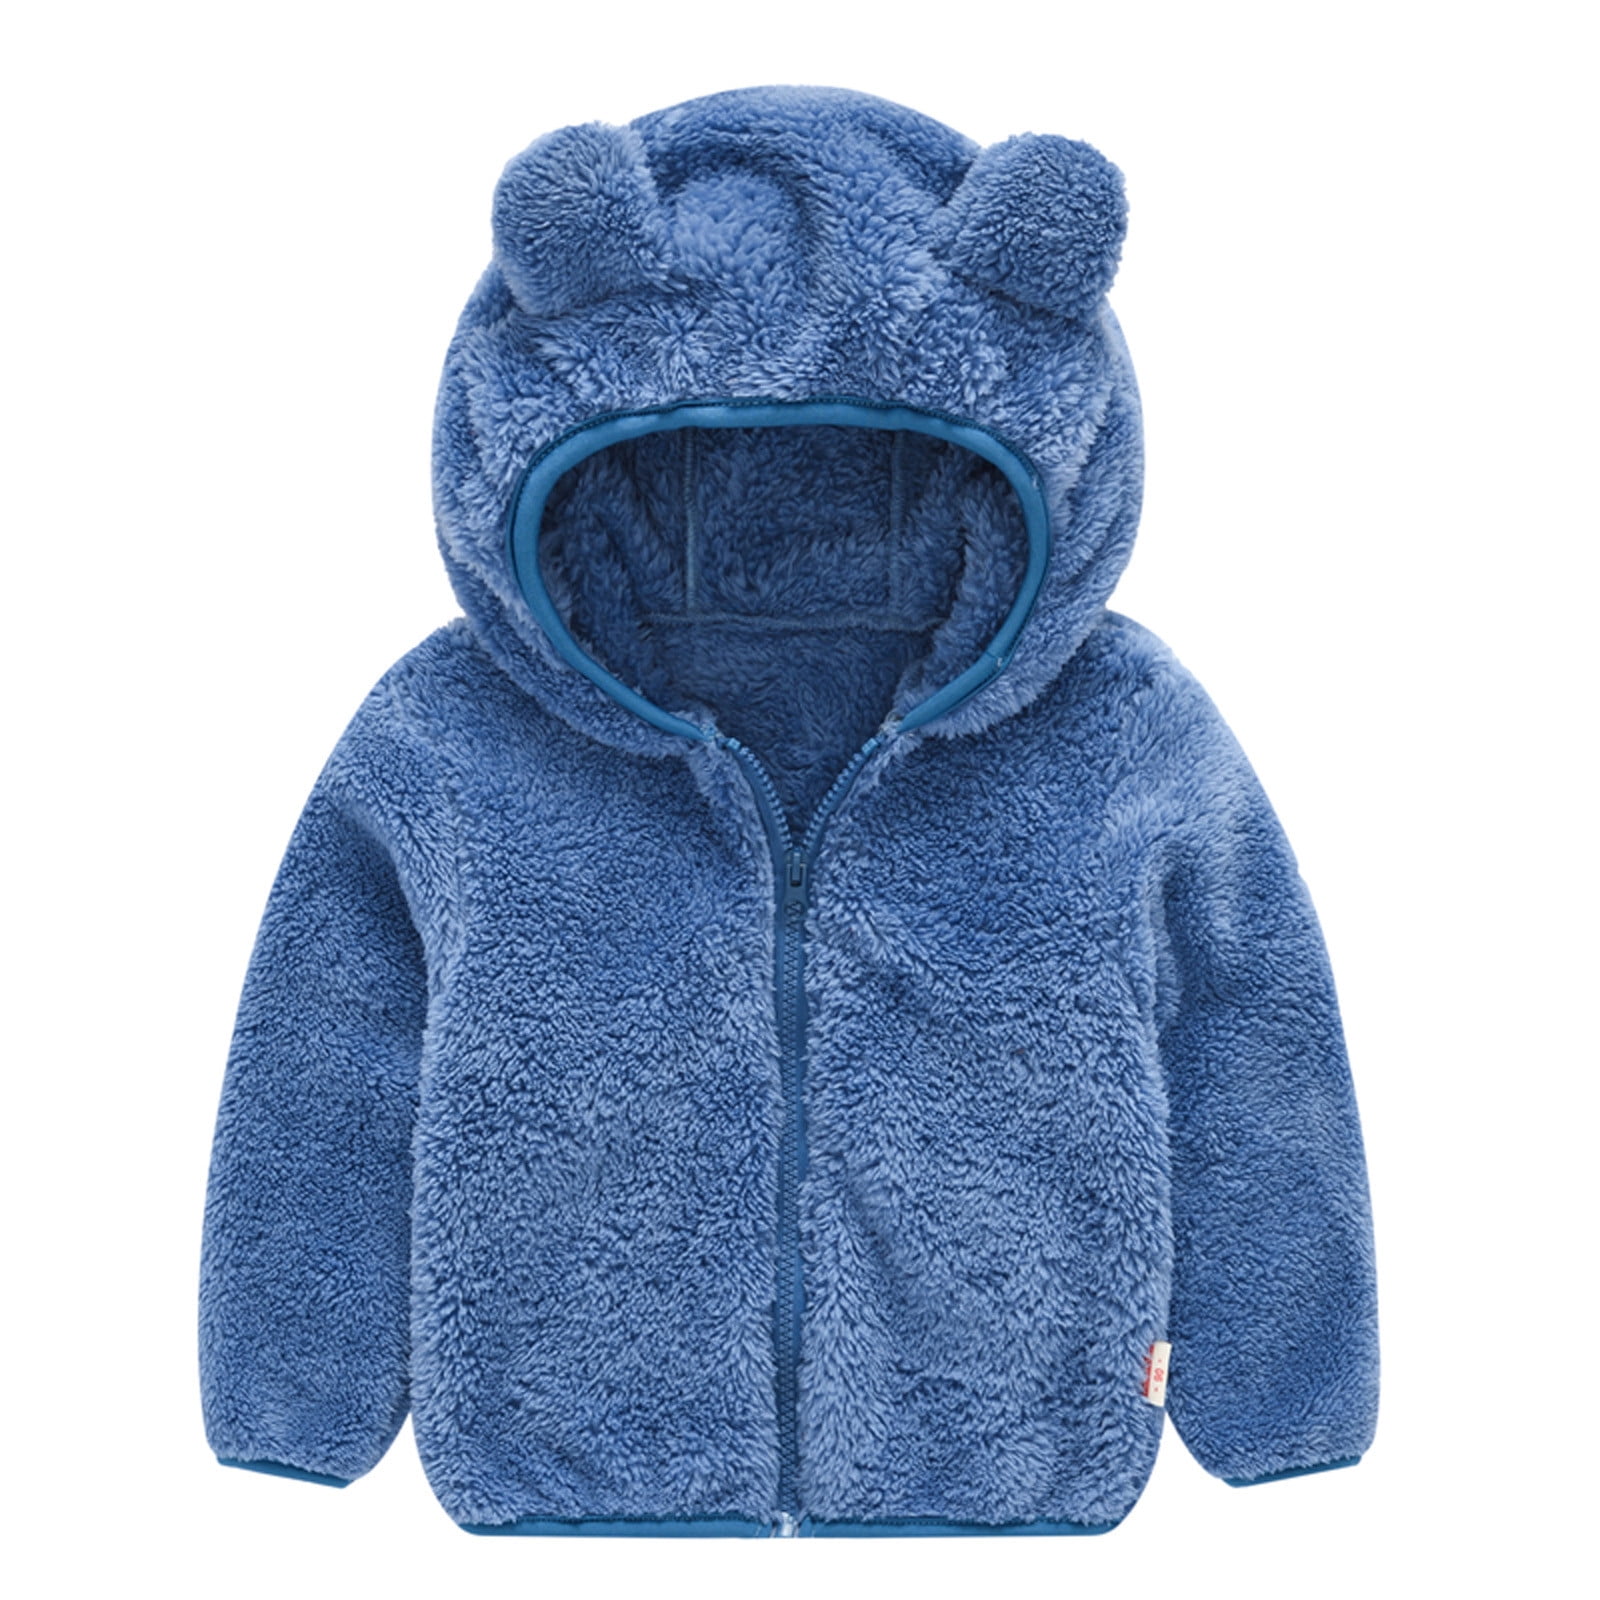 Details about   Kids Girls Faux Fur Warm Hooded Coat Child Fleece Jacket Winter Outerwear Tops 